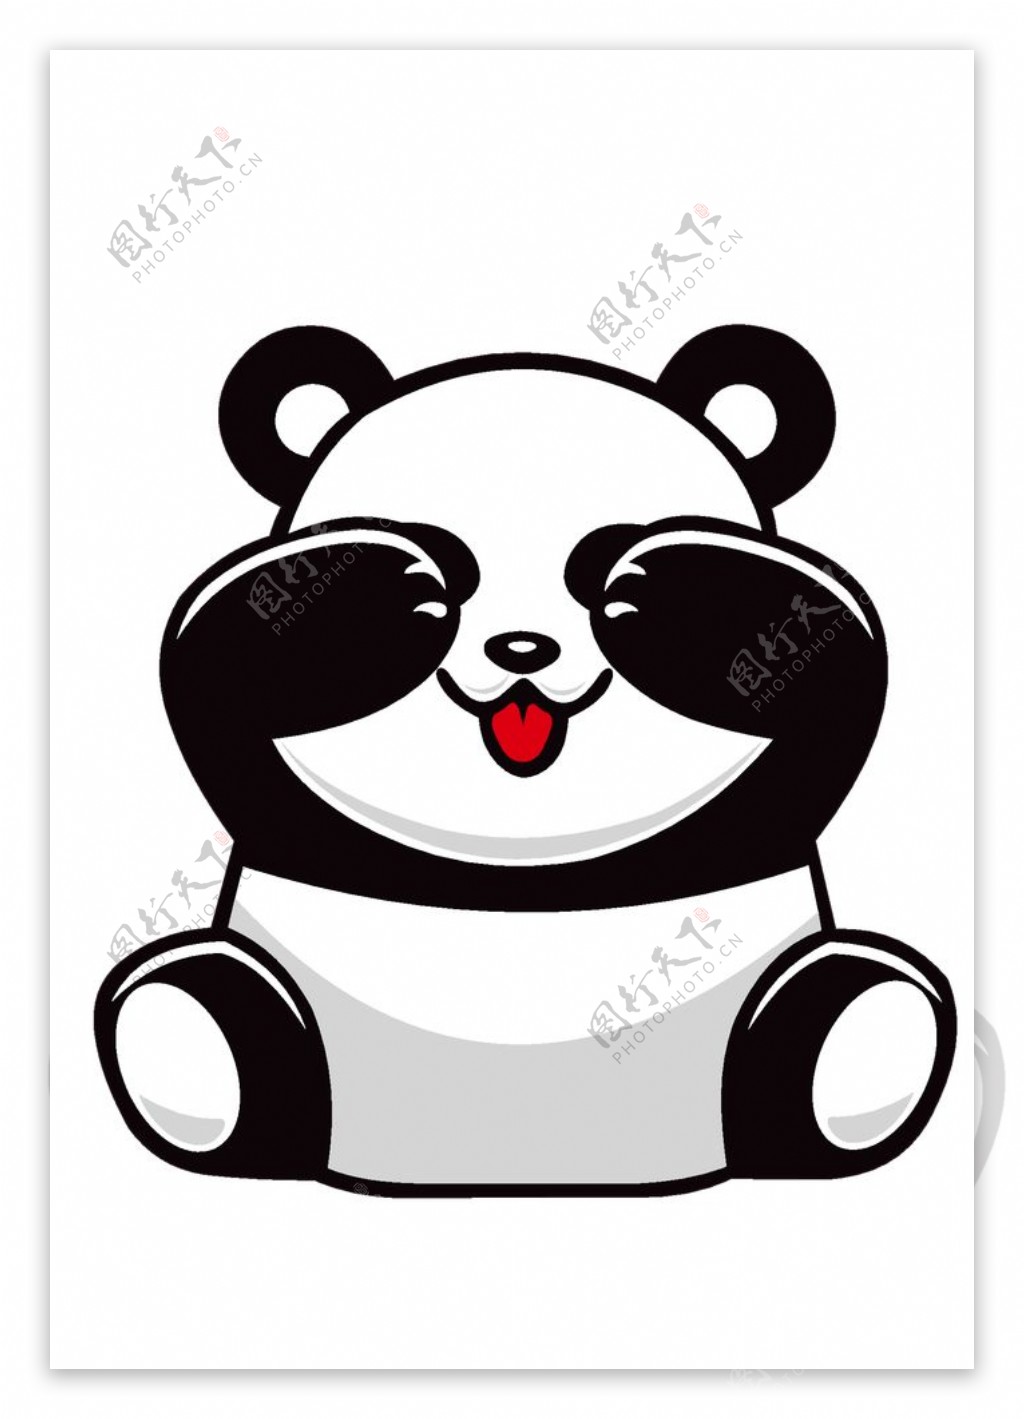 沙雕熊猫头系列表情包，拿图点赞